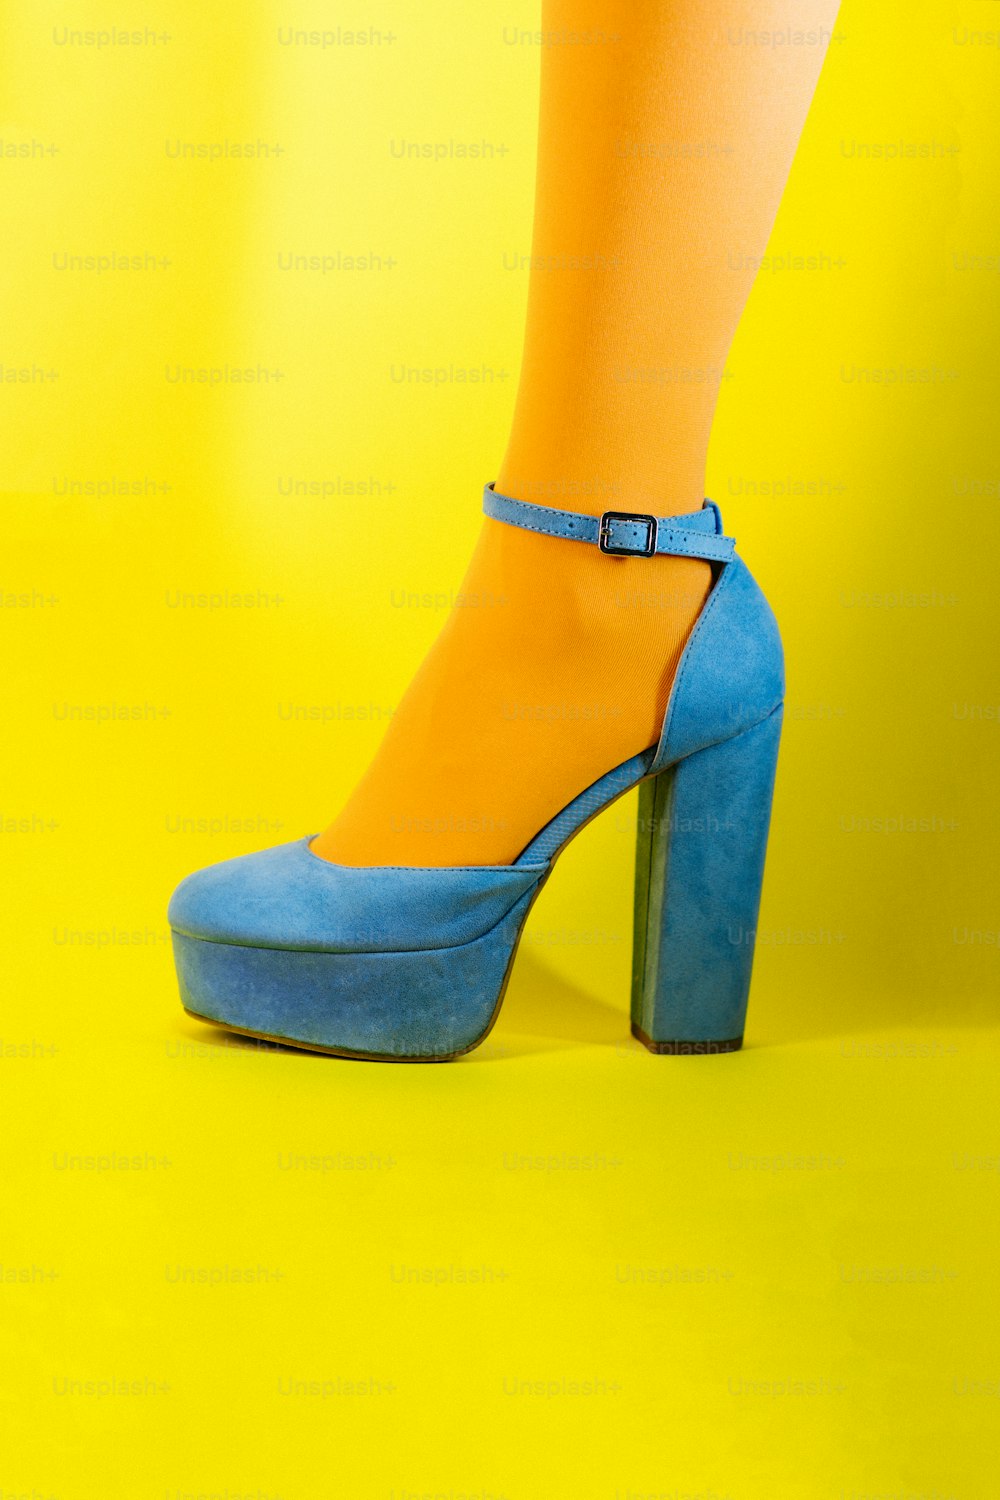 las piernas de una mujer con tacones altos azules y amarillos